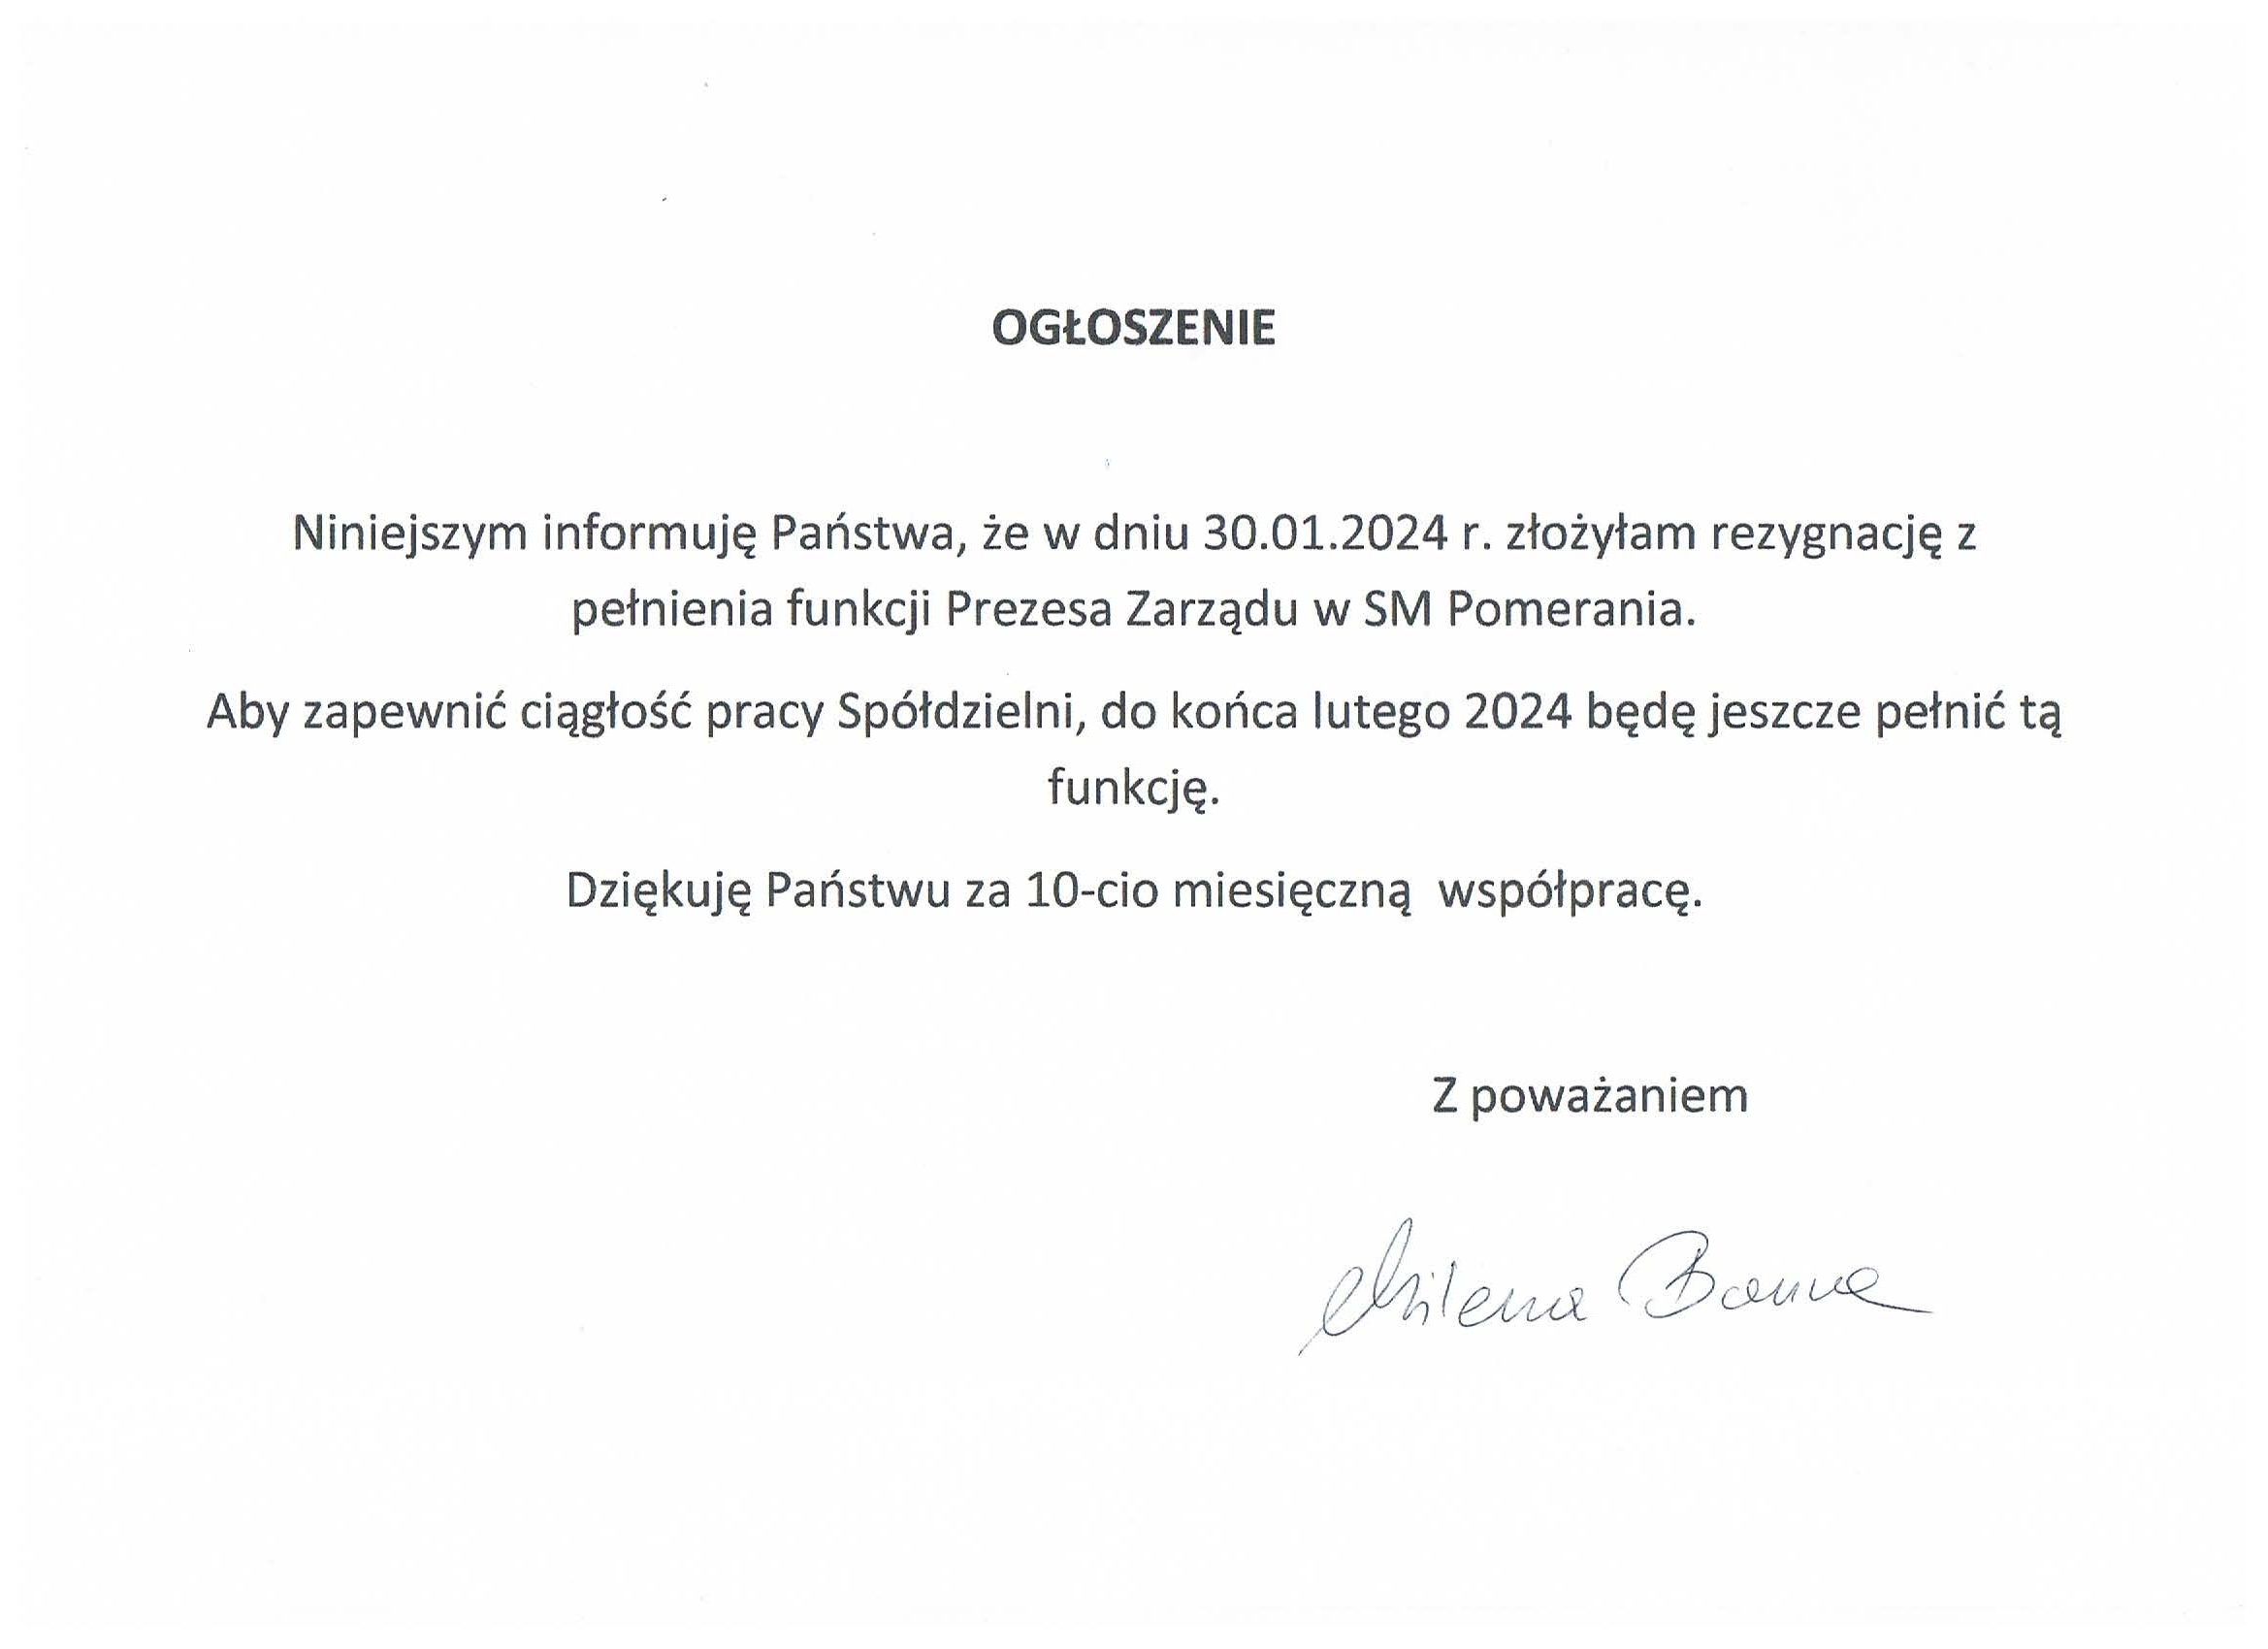 Ogłoszenie o rezygnacji z funkcji Prezesa Zarządu SM Pomerania